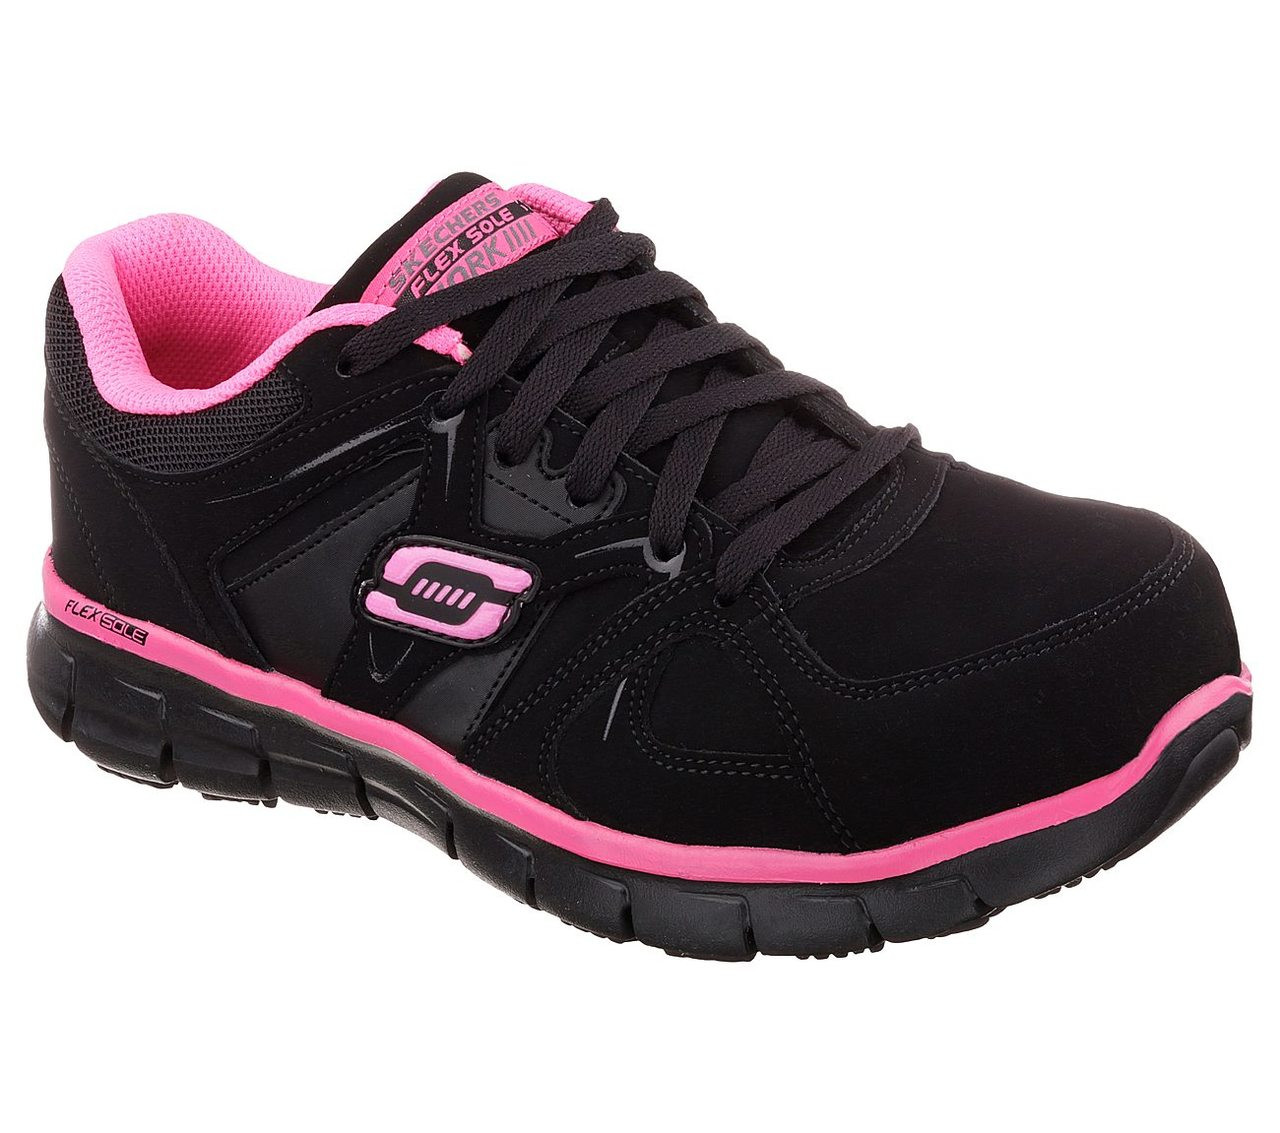 Skechers Women's Athletic Composite Toe Work Boots - Black/Pink - Chaar